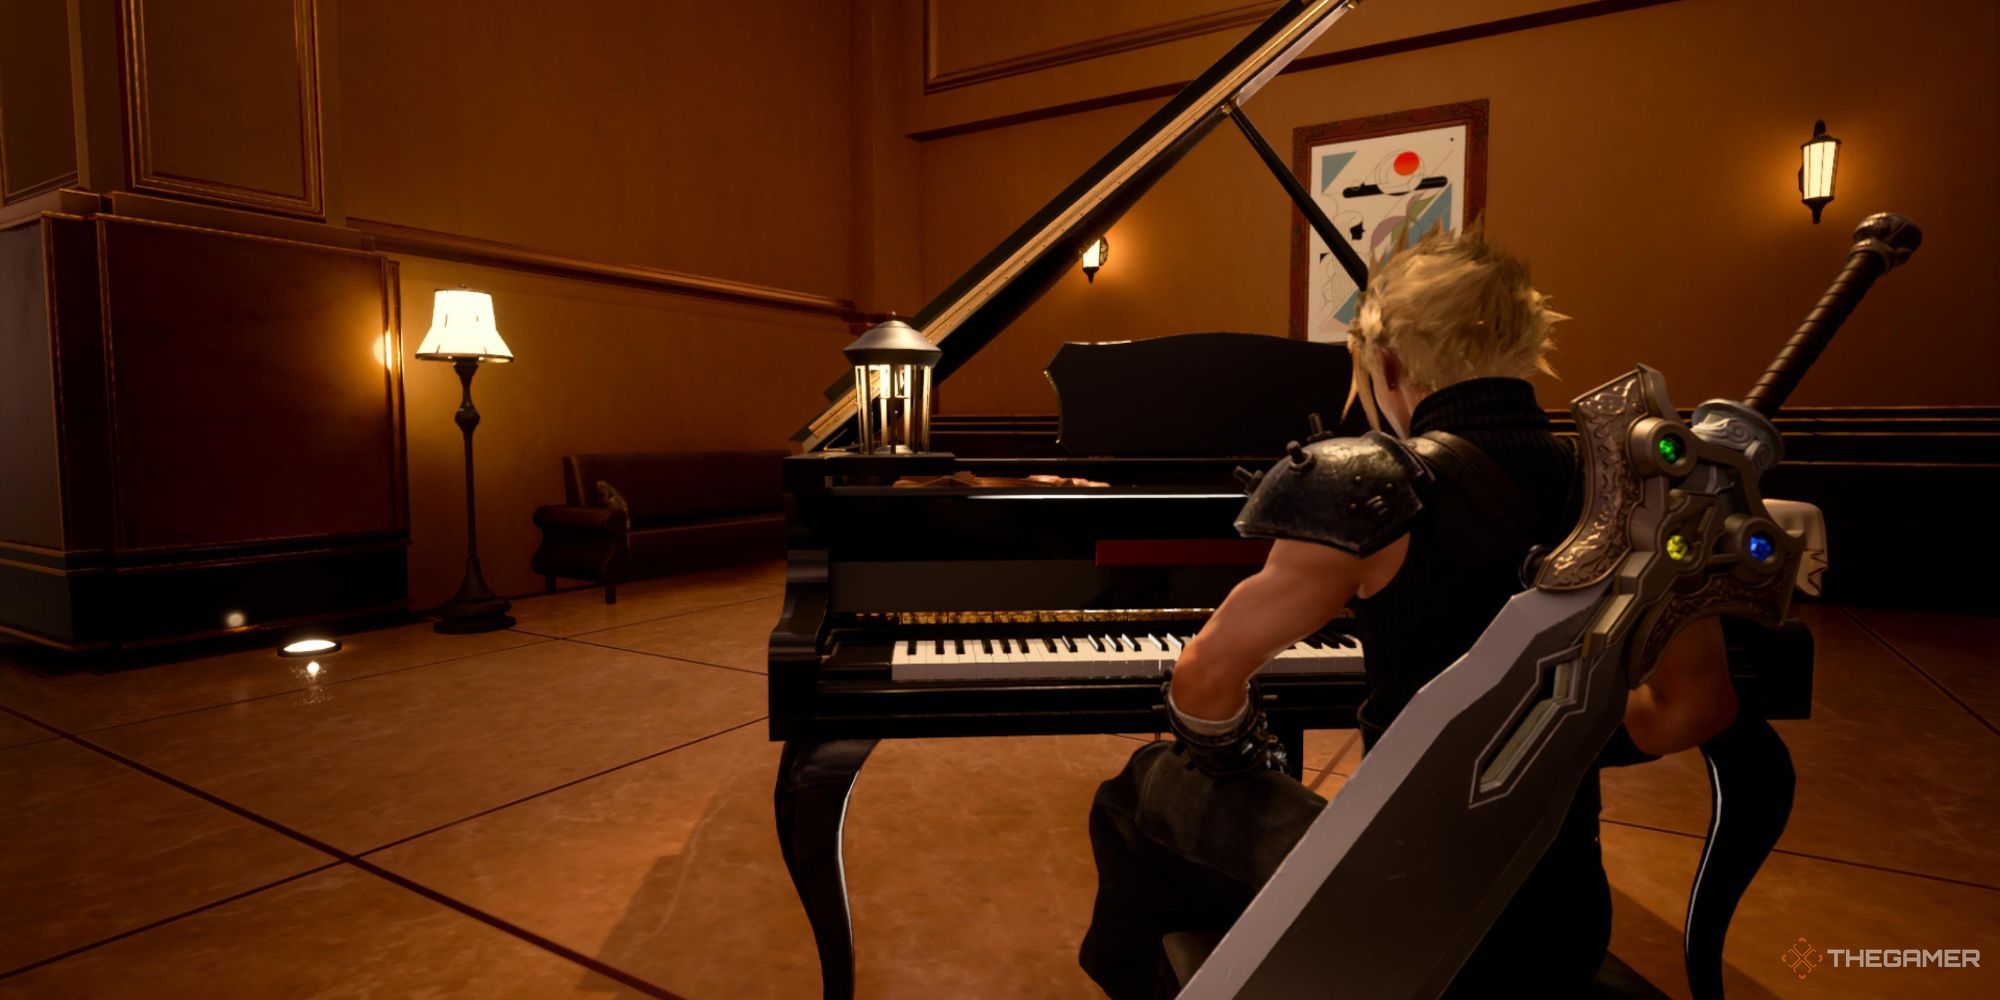 Cloud sitting at the piano in Costa del Sol in Final Fantasy 7 Rebirth.